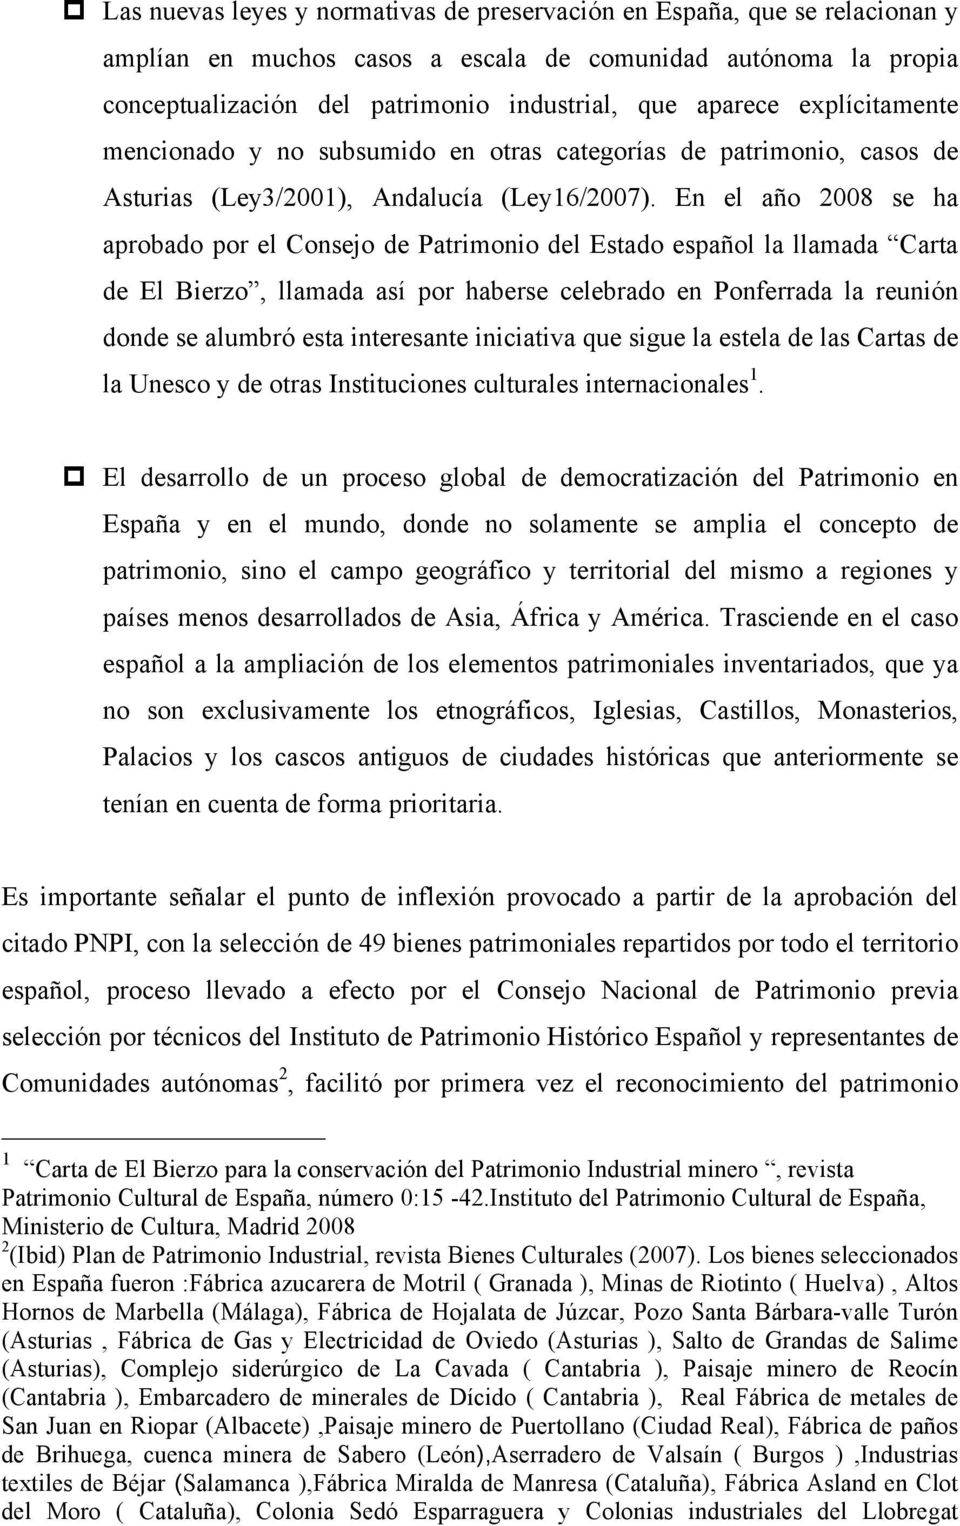 En el año 2008 se ha aprobado por el Consejo de Patrimonio del Estado español la llamada Carta de El Bierzo, llamada así por haberse celebrado en Ponferrada la reunión donde se alumbró esta